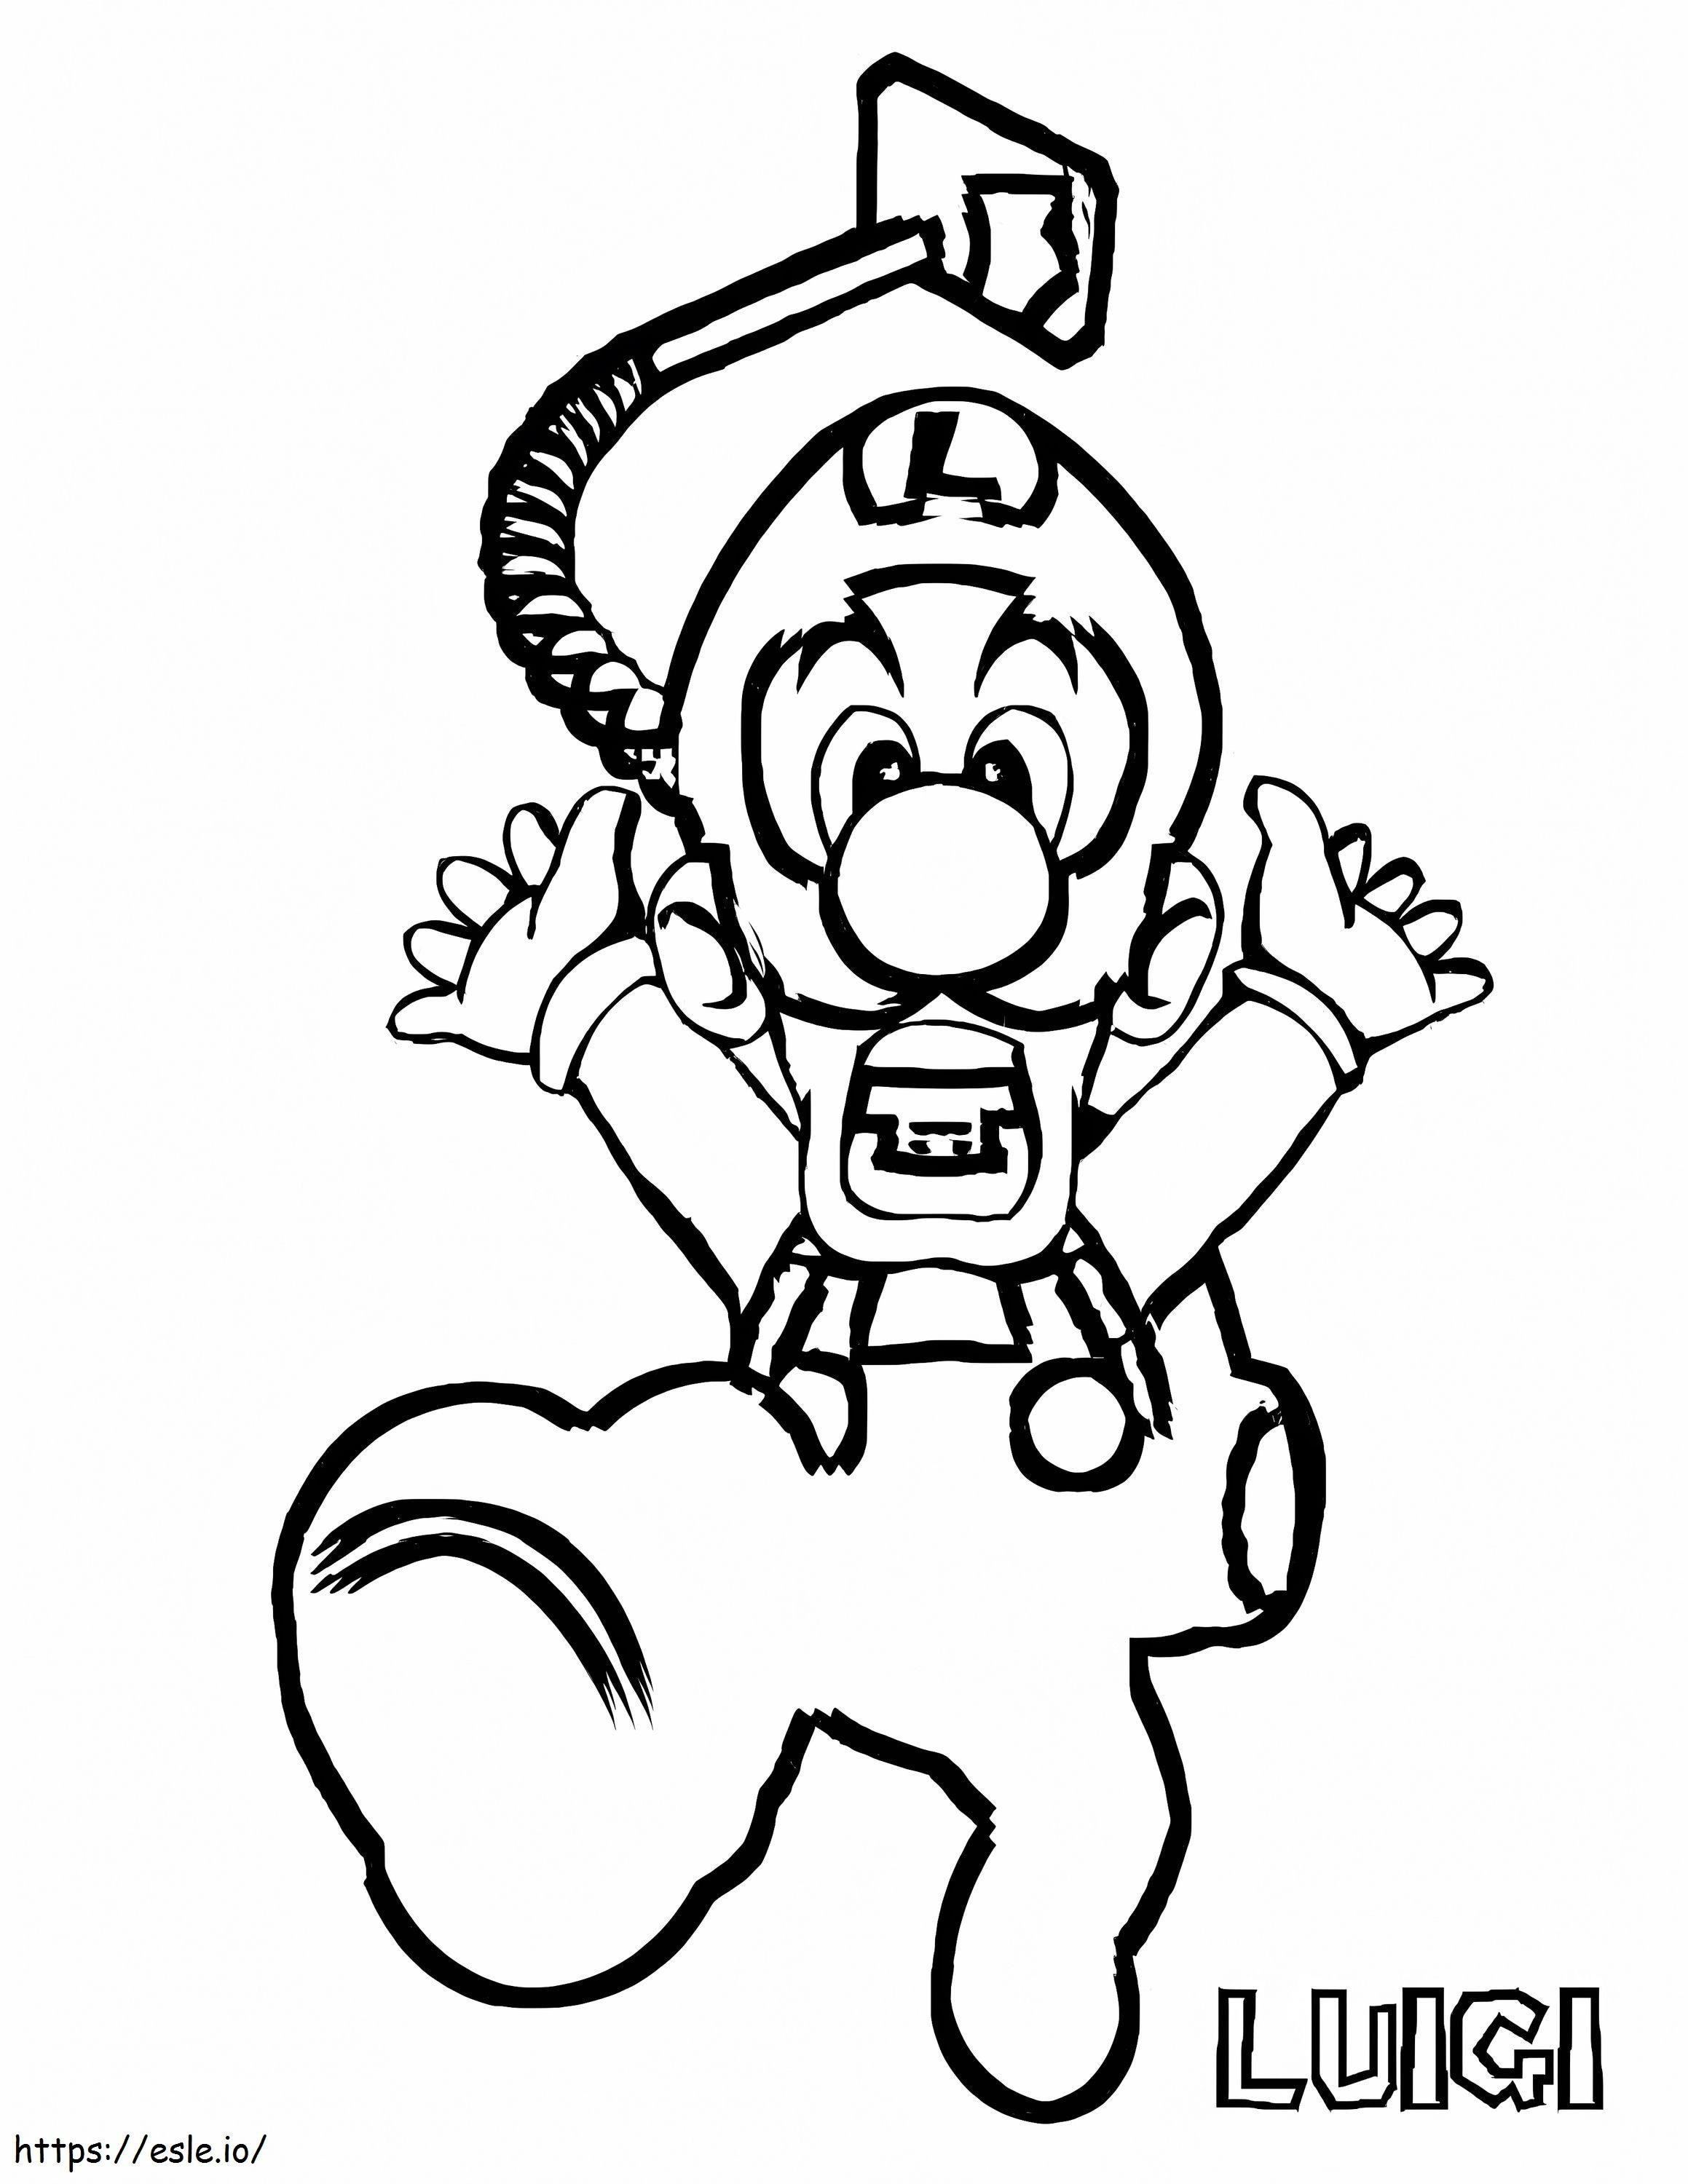 Desenhando Mergulhador Luigi para colorir